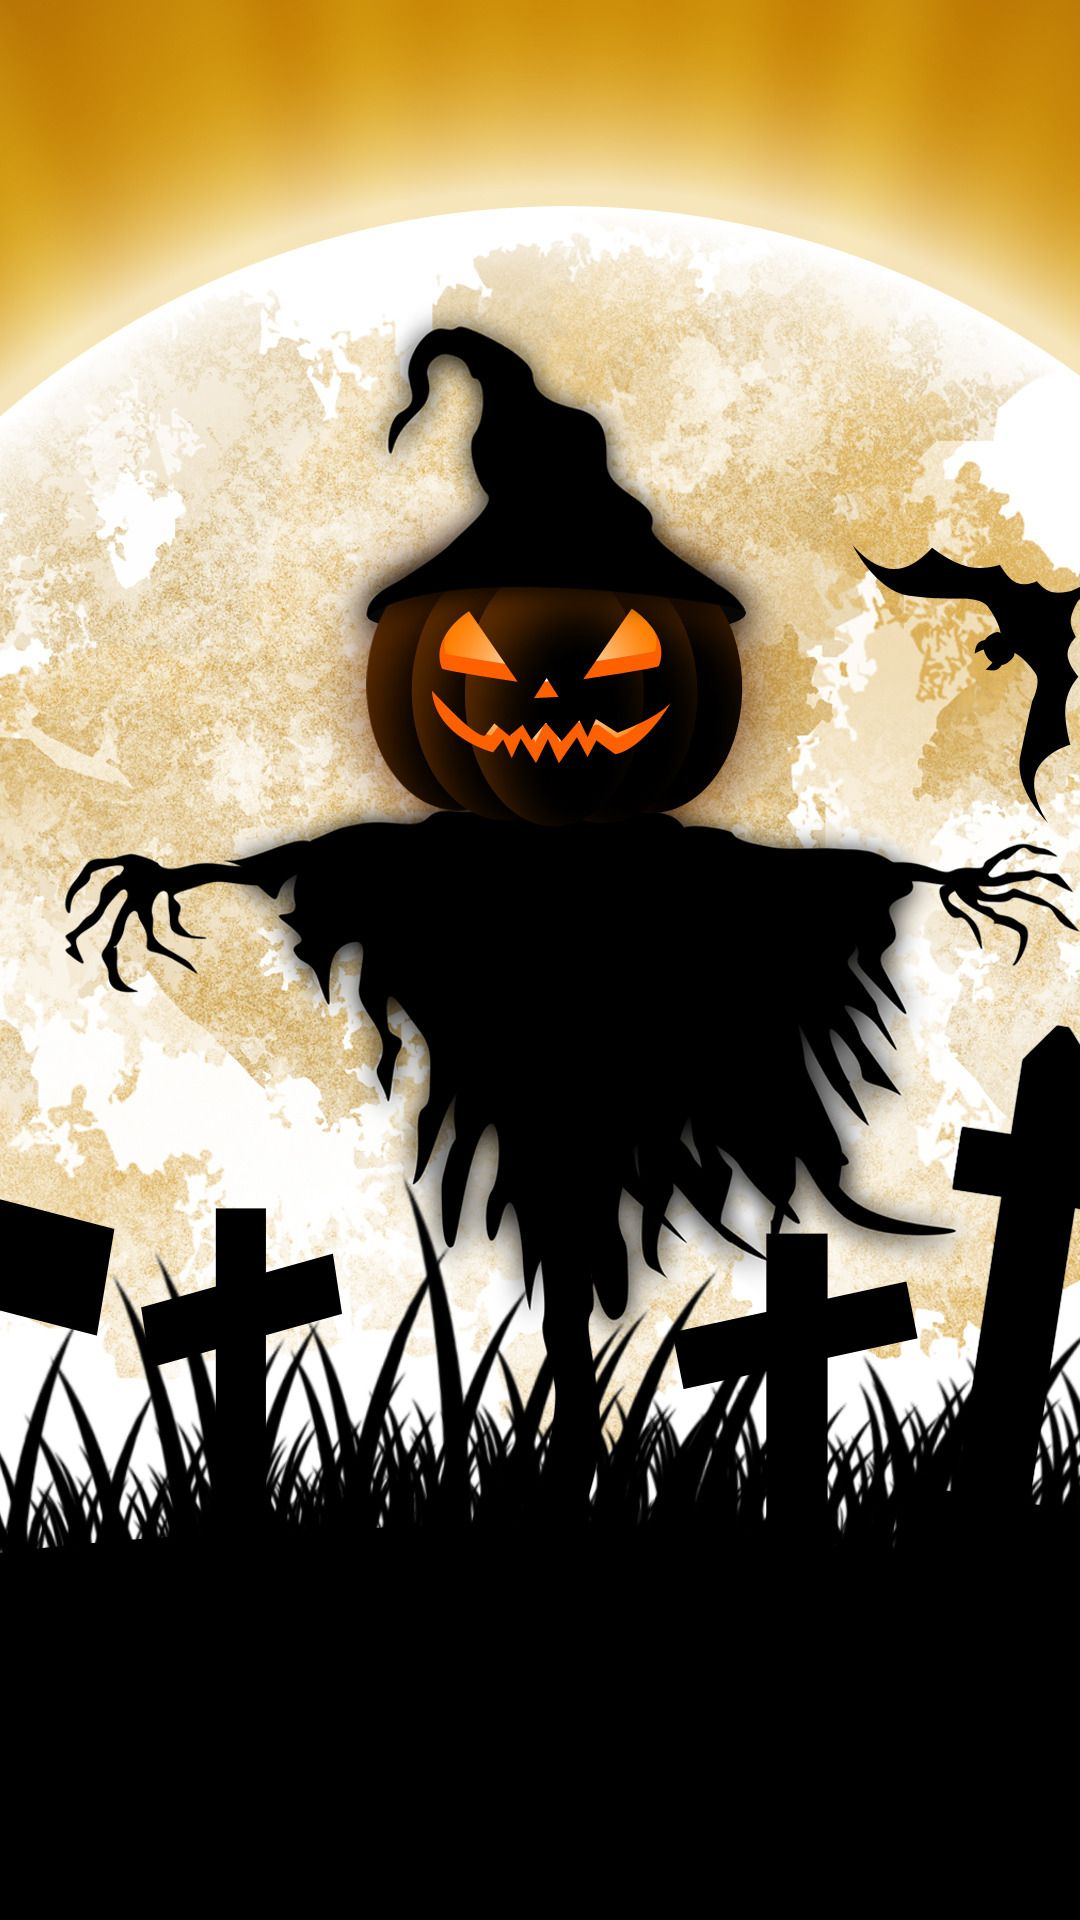 1080x1920 New iPhone Wallpaper | iPhone Wallpaper | Halloween prints, Halloween pictures, Halloween artwork